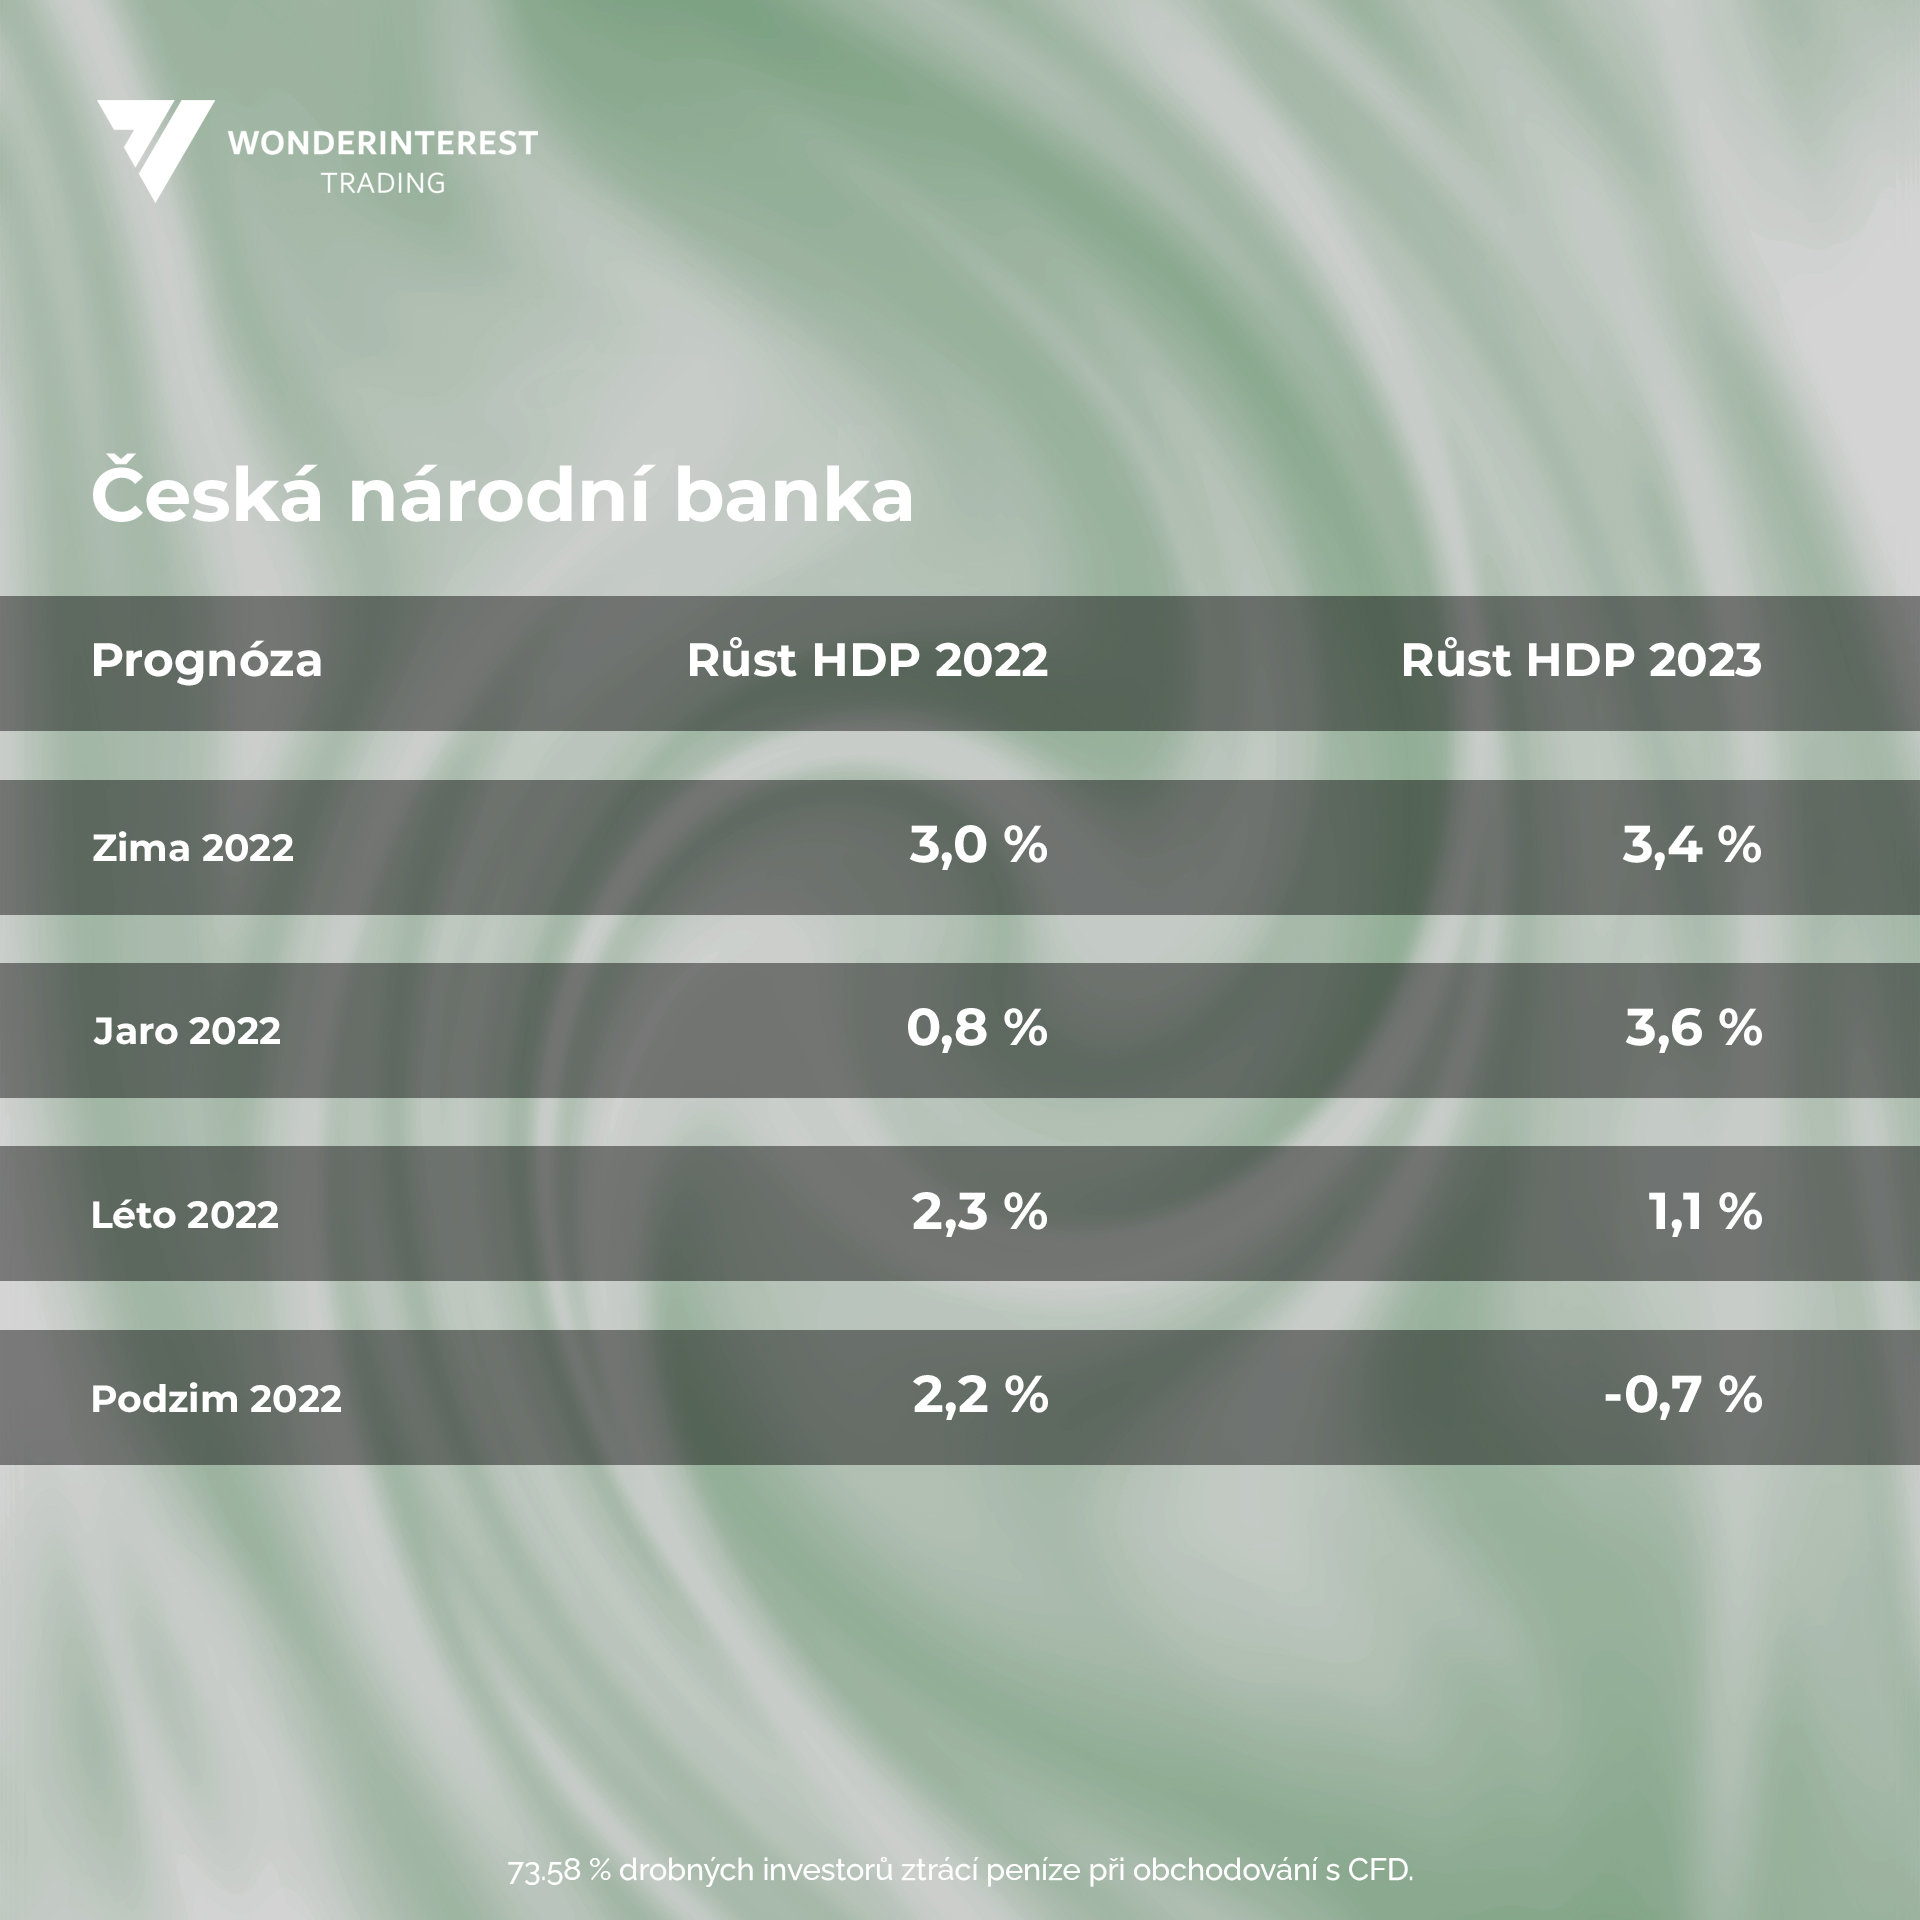 FINAL tabulka - Česká národní banka